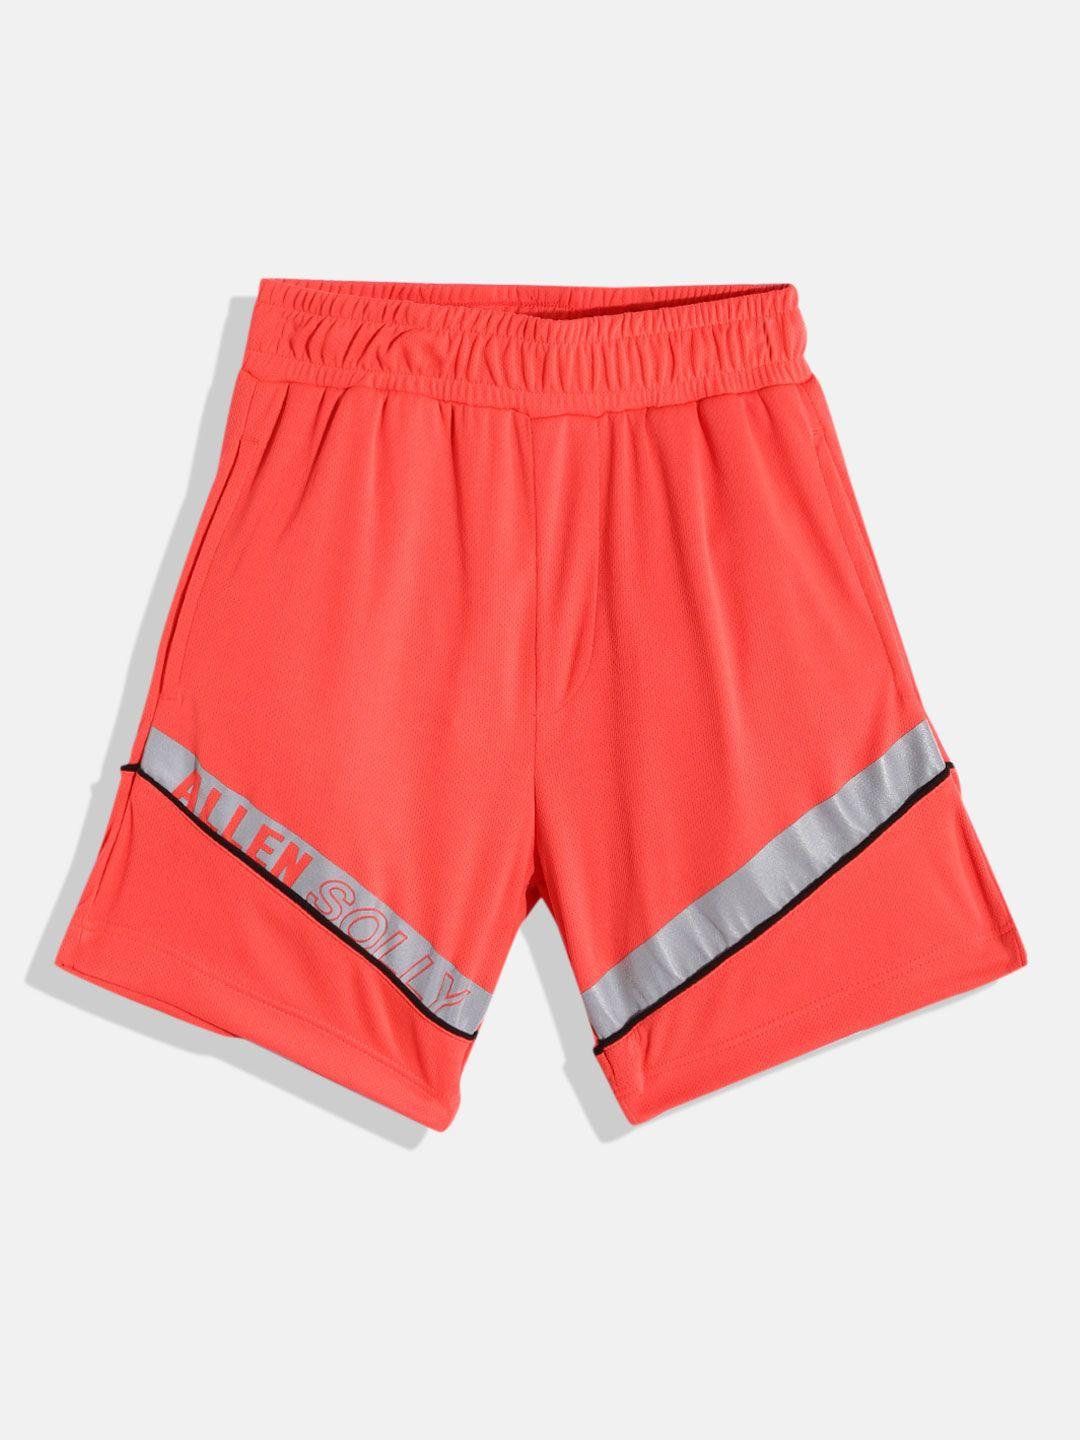 allen solly junior boys coral orange & grey striped shorts